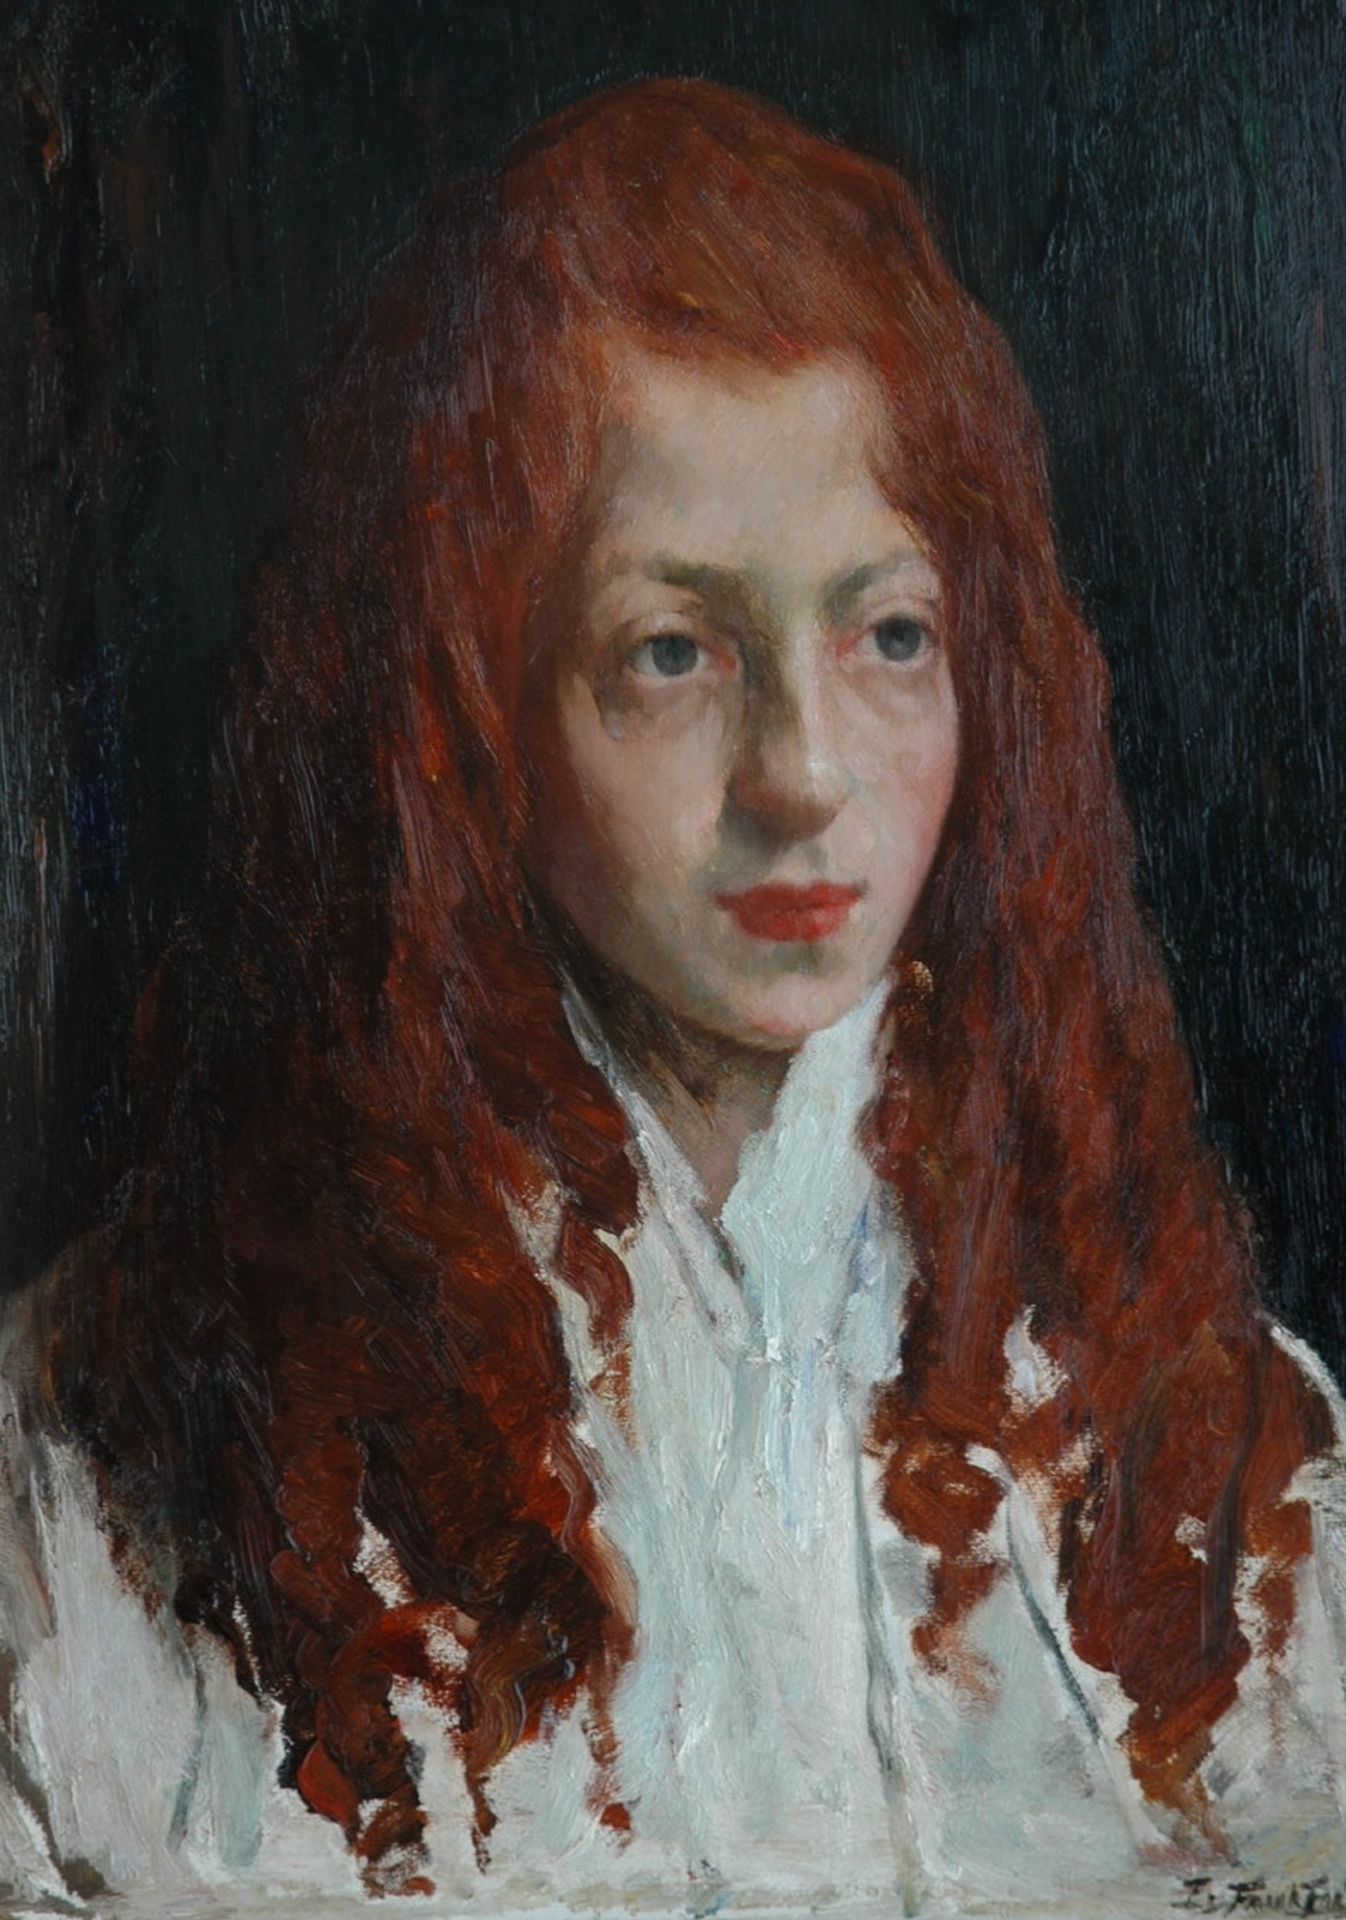 Geven beddengoed Nevelig Eduard Frankfort | Schilderijen vh. te Koop | Joods meisje met rood haar